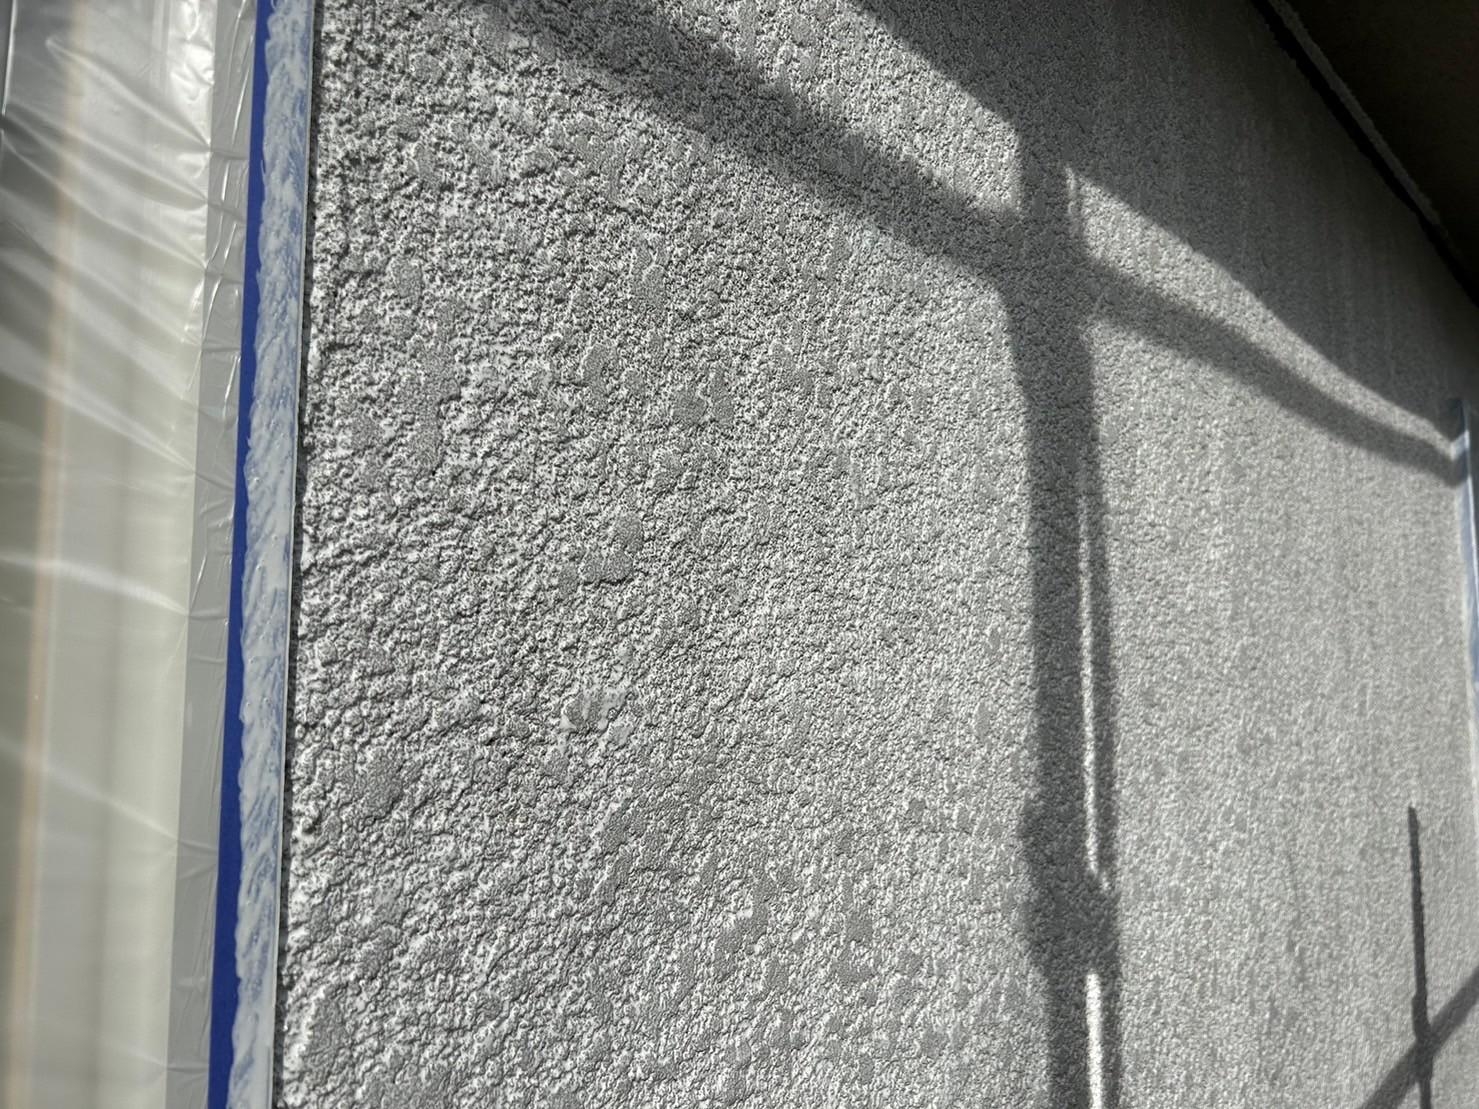 福岡県糟屋郡新宮町のK様邸でひび割れや色褪せの見られる外壁と付帯部の剥がれや屋根の色褪せも併せて塗装で解消しました。12/29完成です。【HPより】